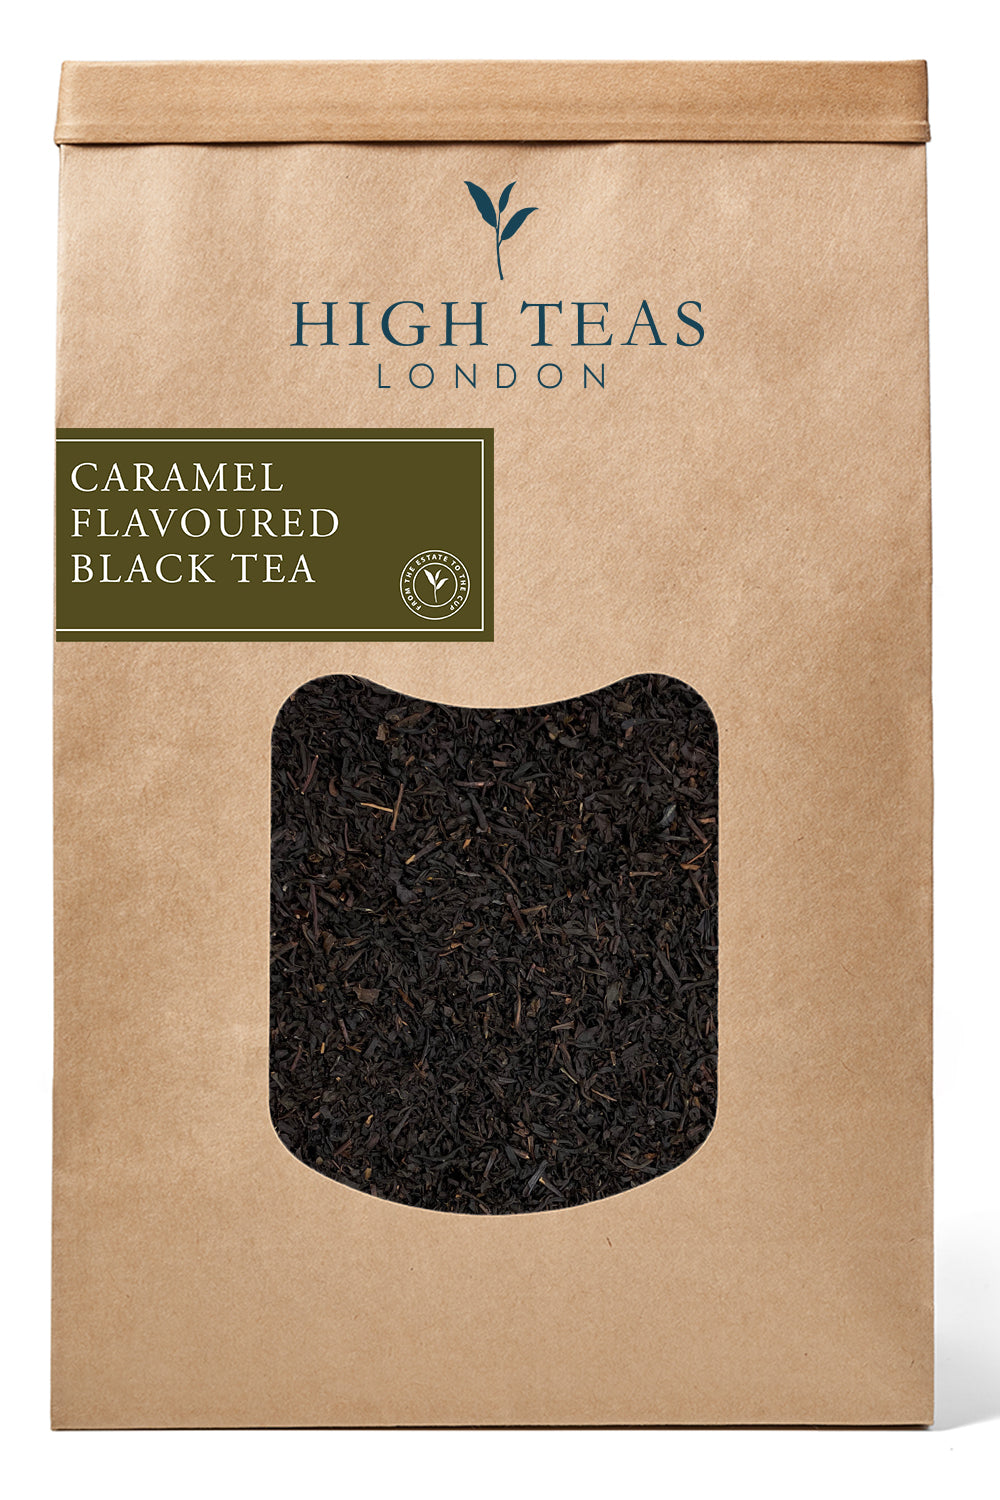 Caramel Flavoured Black Tea-500g-Loose Leaf Tea-High Teas